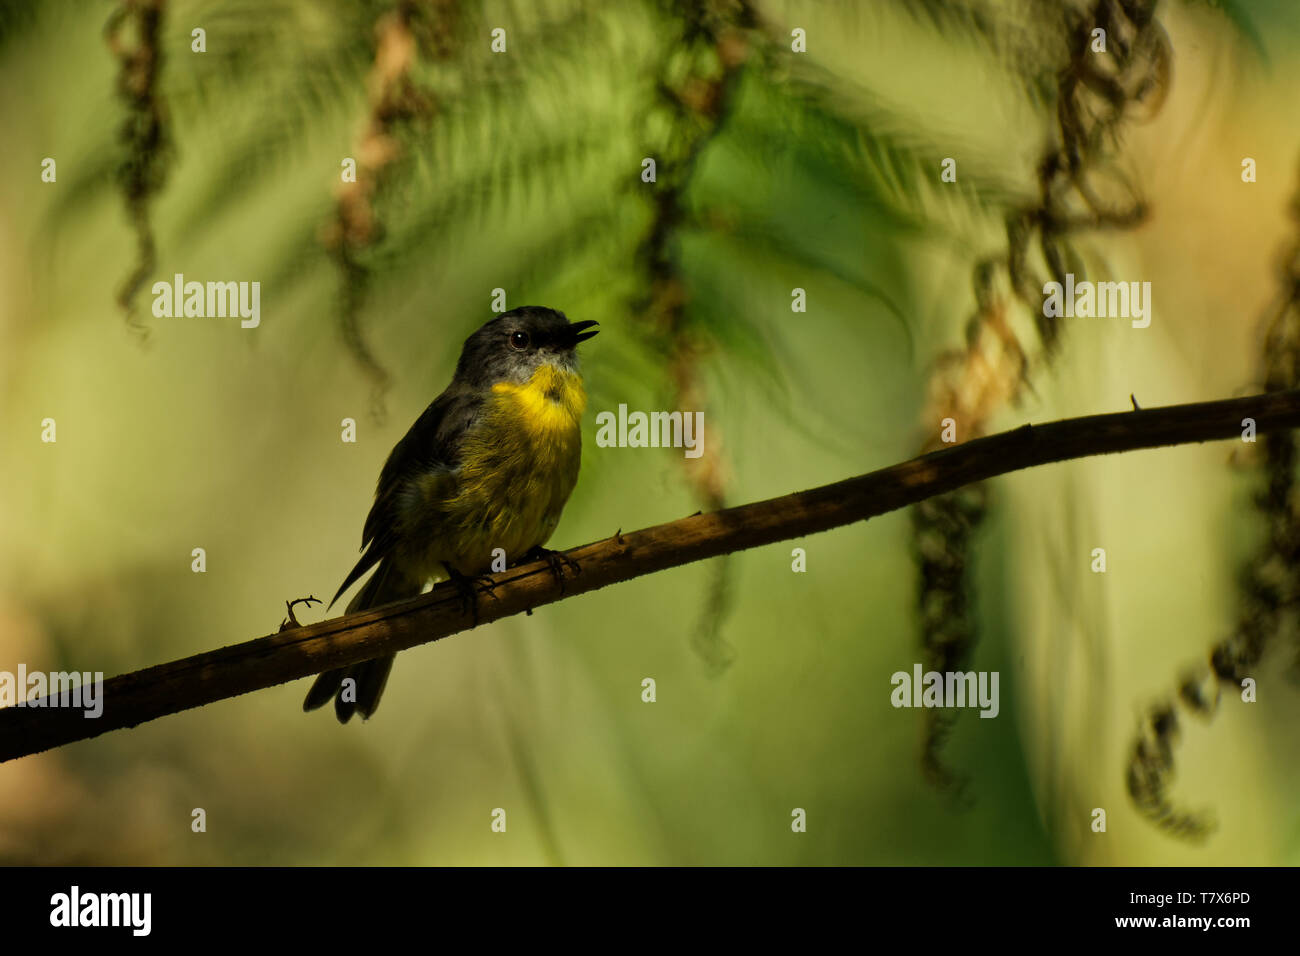 Giallo orientale Robin - Eopsaltria australis - australian vivacemente giallo canzone piccolo uccello, sud ed est dell'Australia. Foto Stock